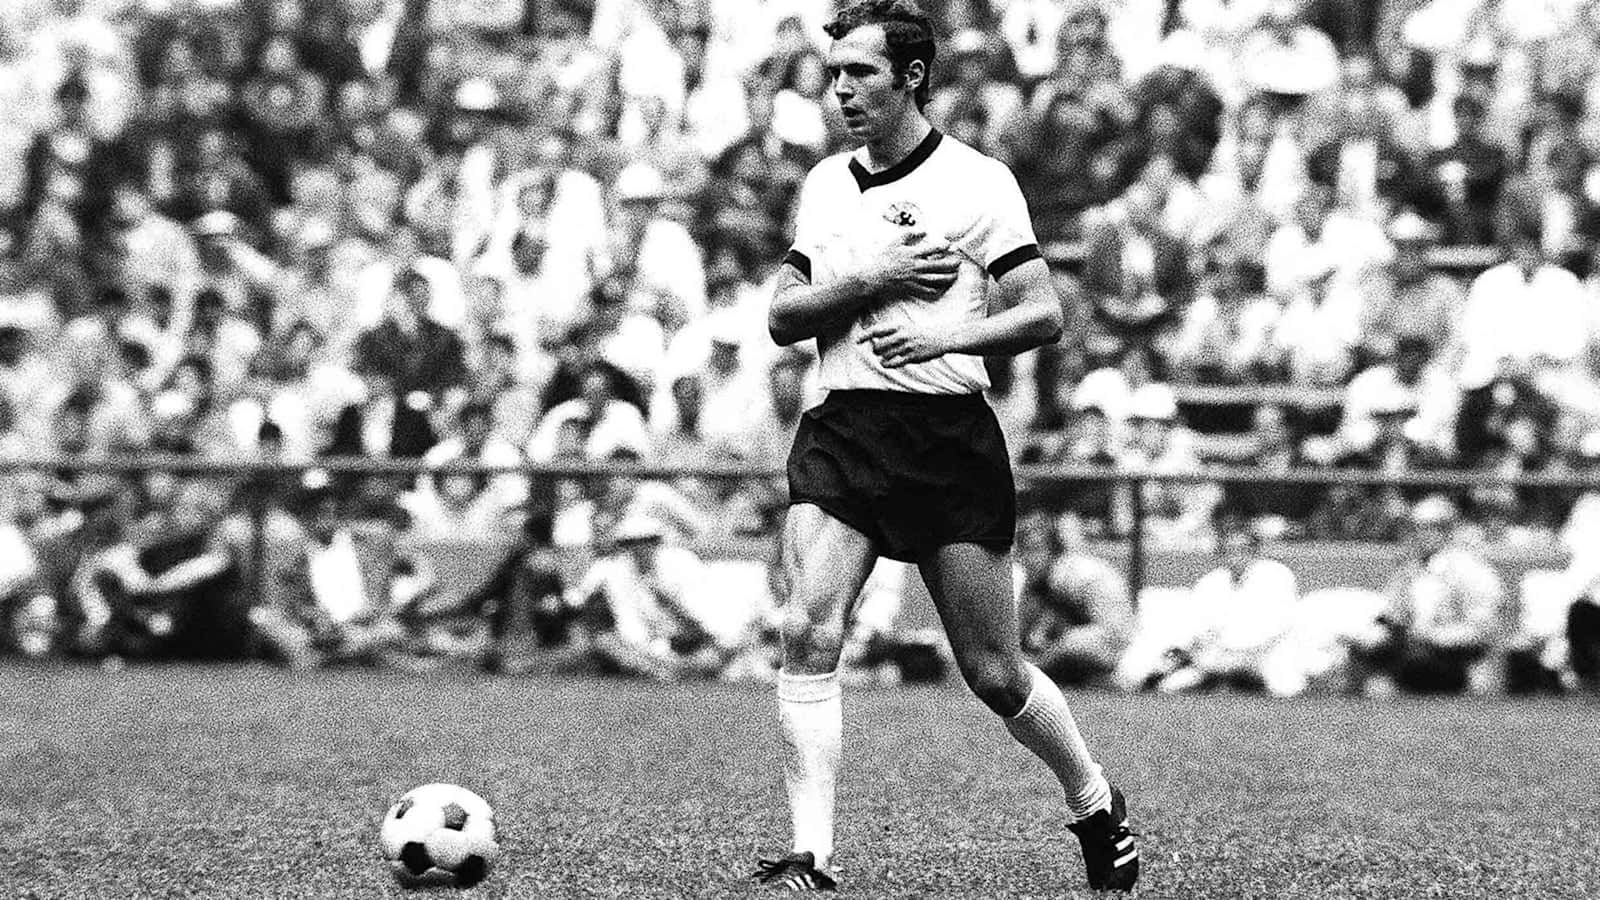 Franz Beckenbauer sort og hvid fodbold tapet Wallpaper